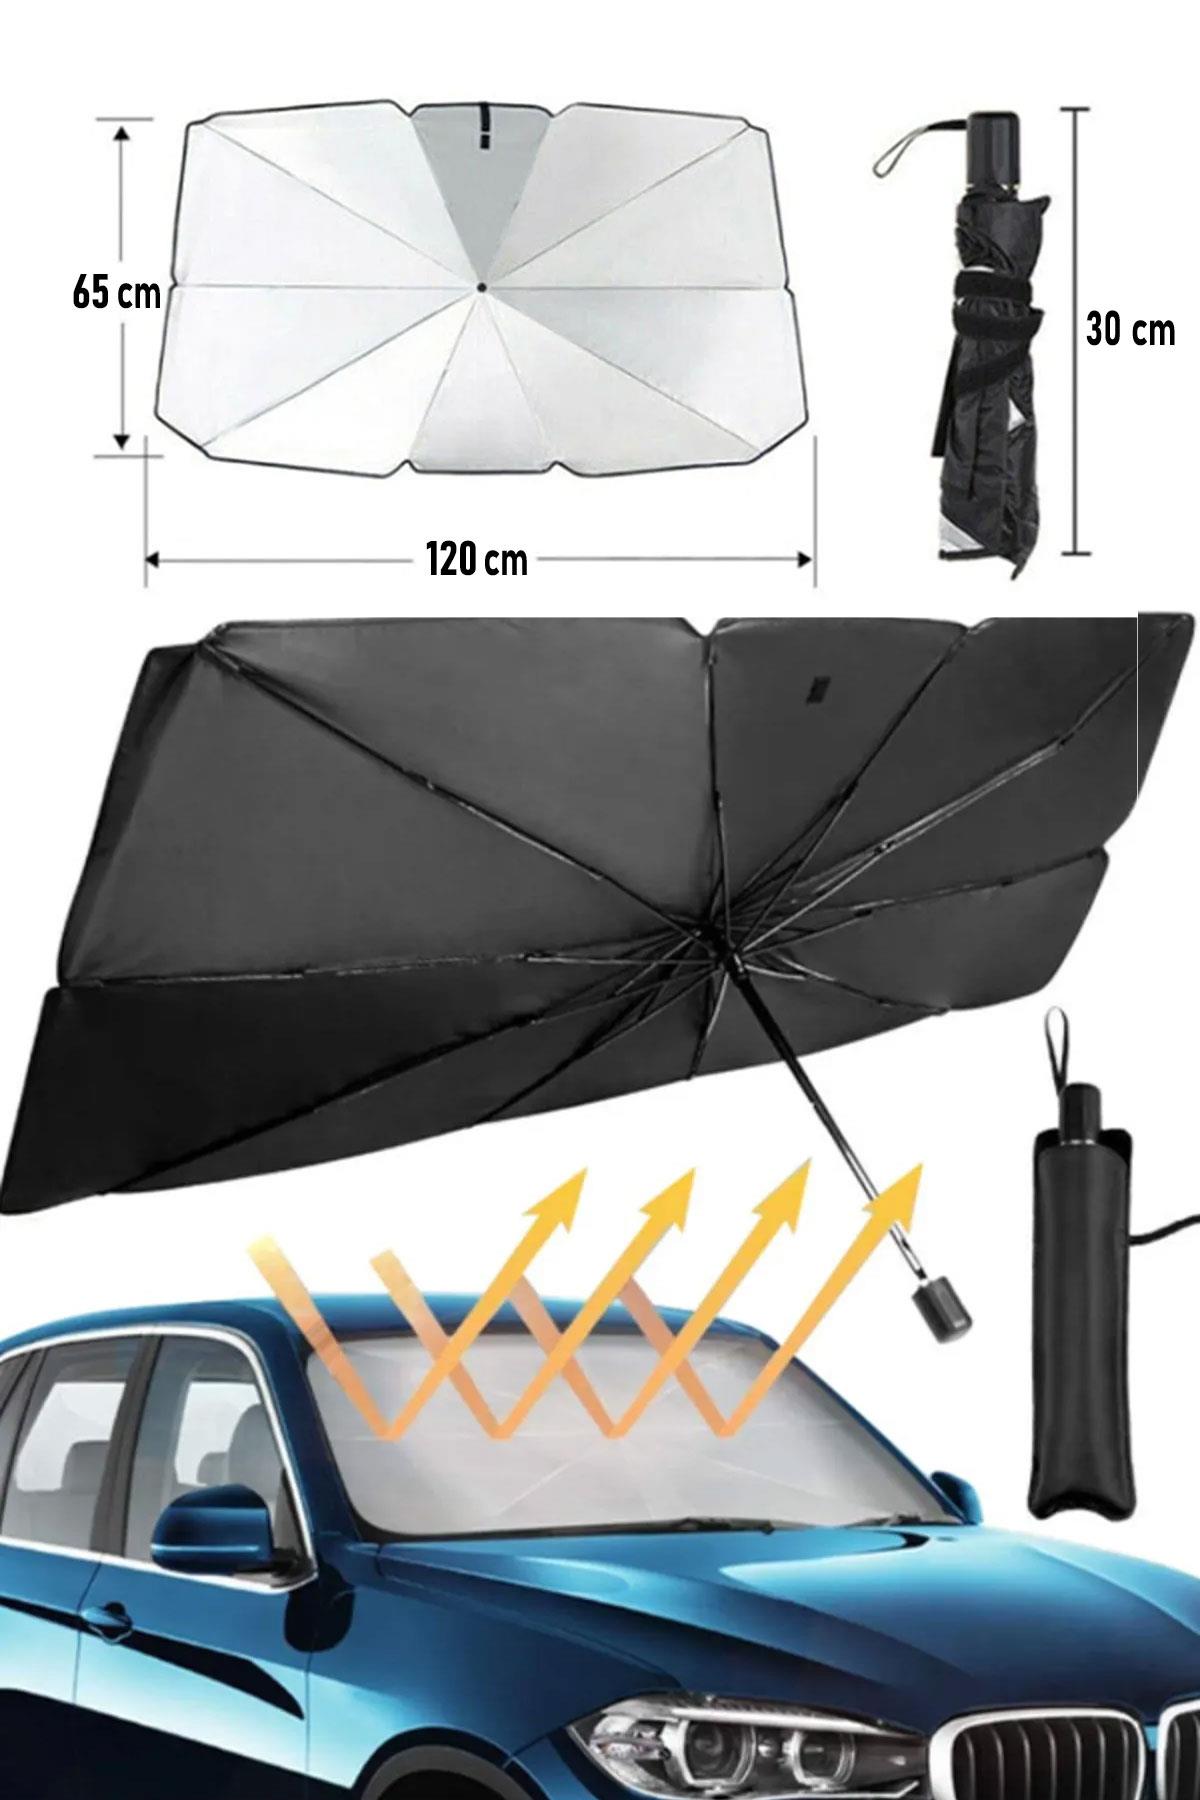 Araba Ön Cam Güneşlik Katlanabilir Güneşlik Şemsiye Ön Cam Gölgelik Küçük  Boy 65 cm x 120